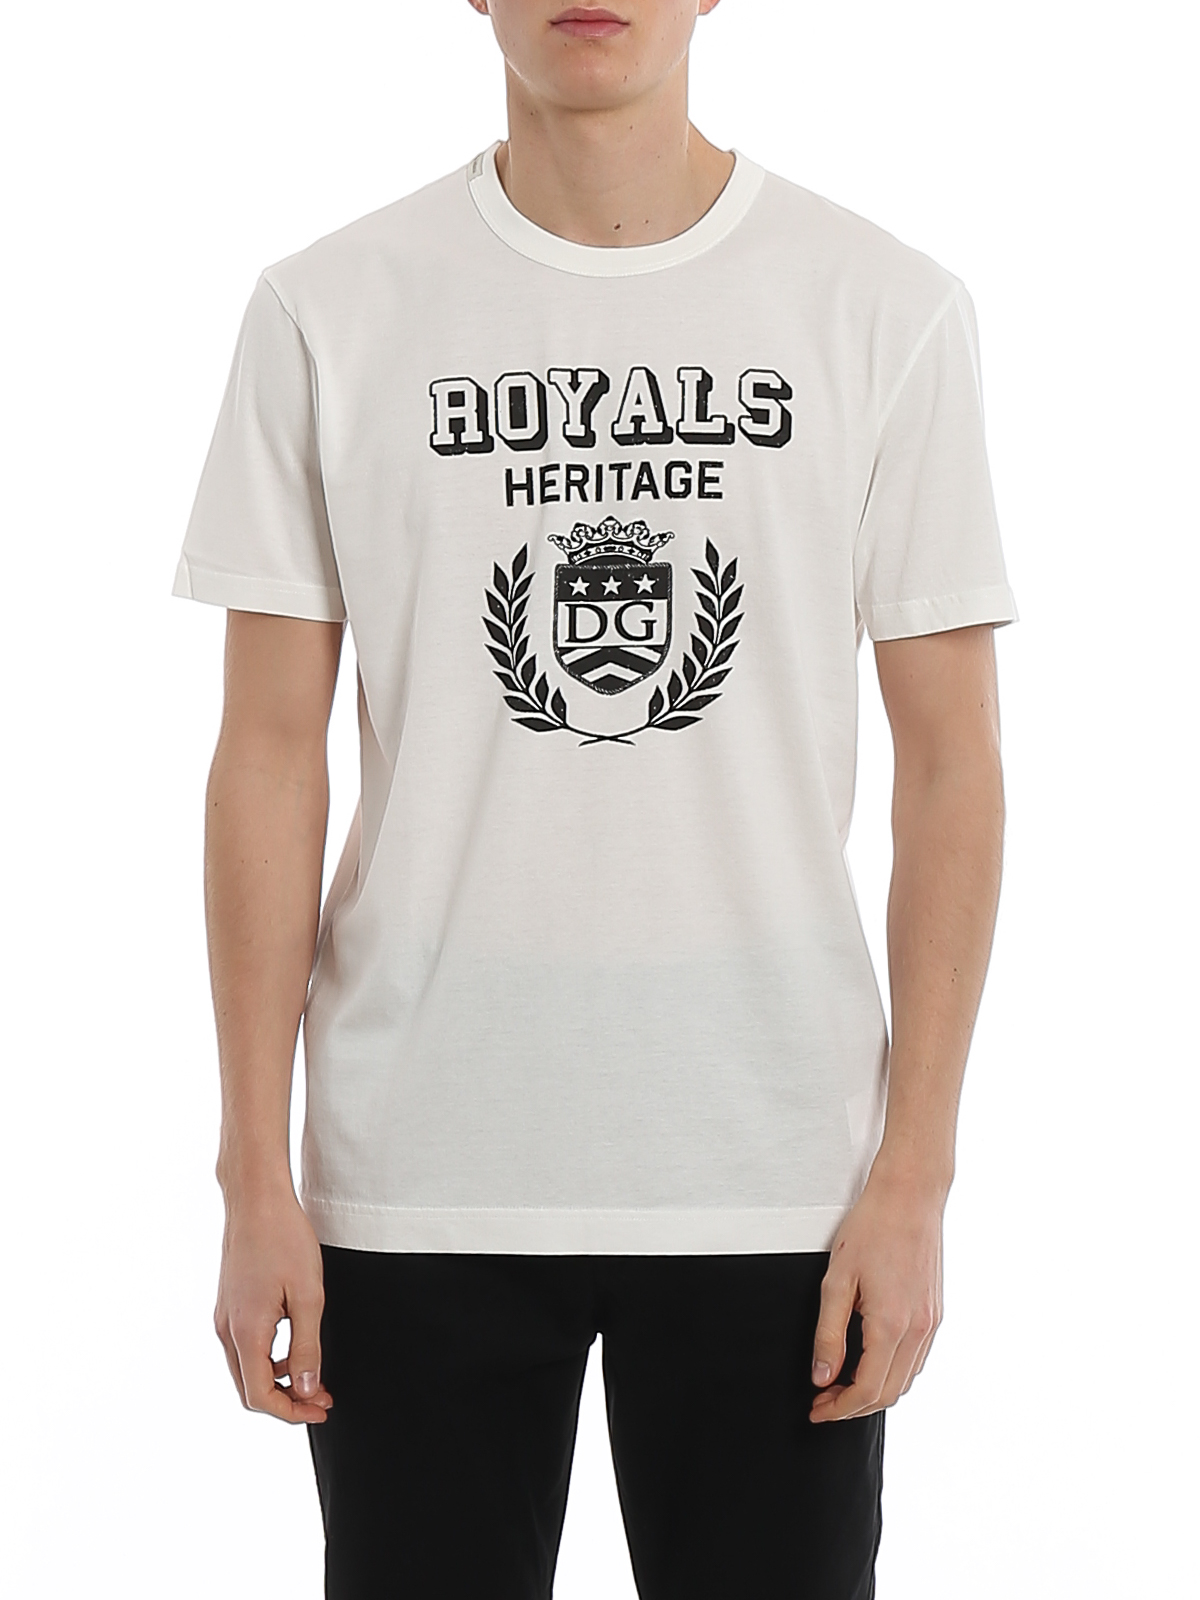 royals t shirt